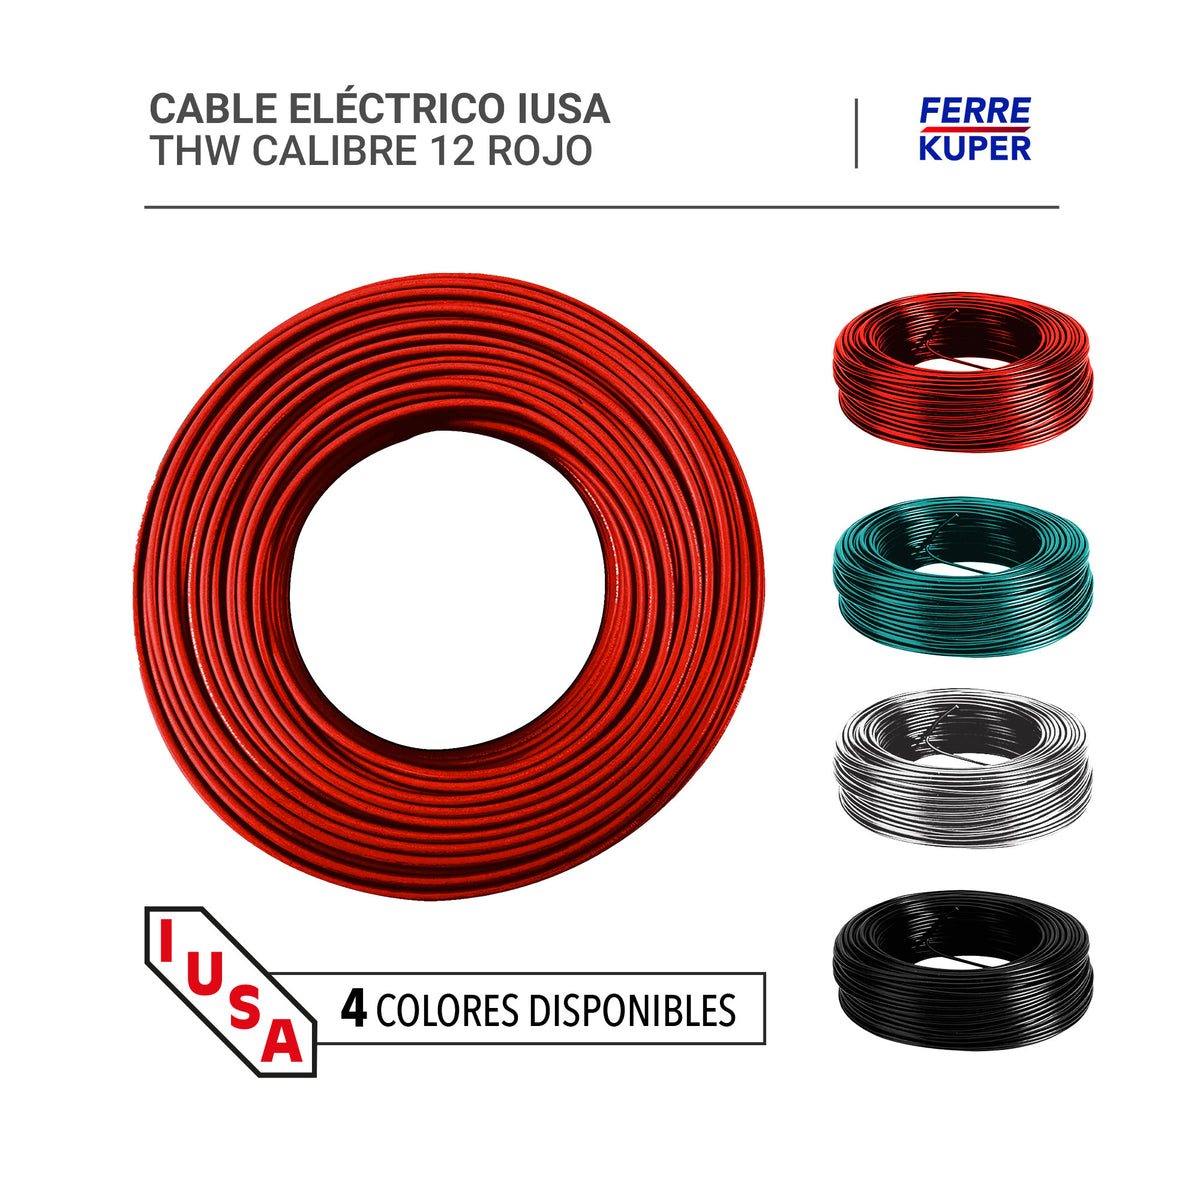 Cable Eléctrico Iusa Thw Calibre 12 Ferrekuper 4263